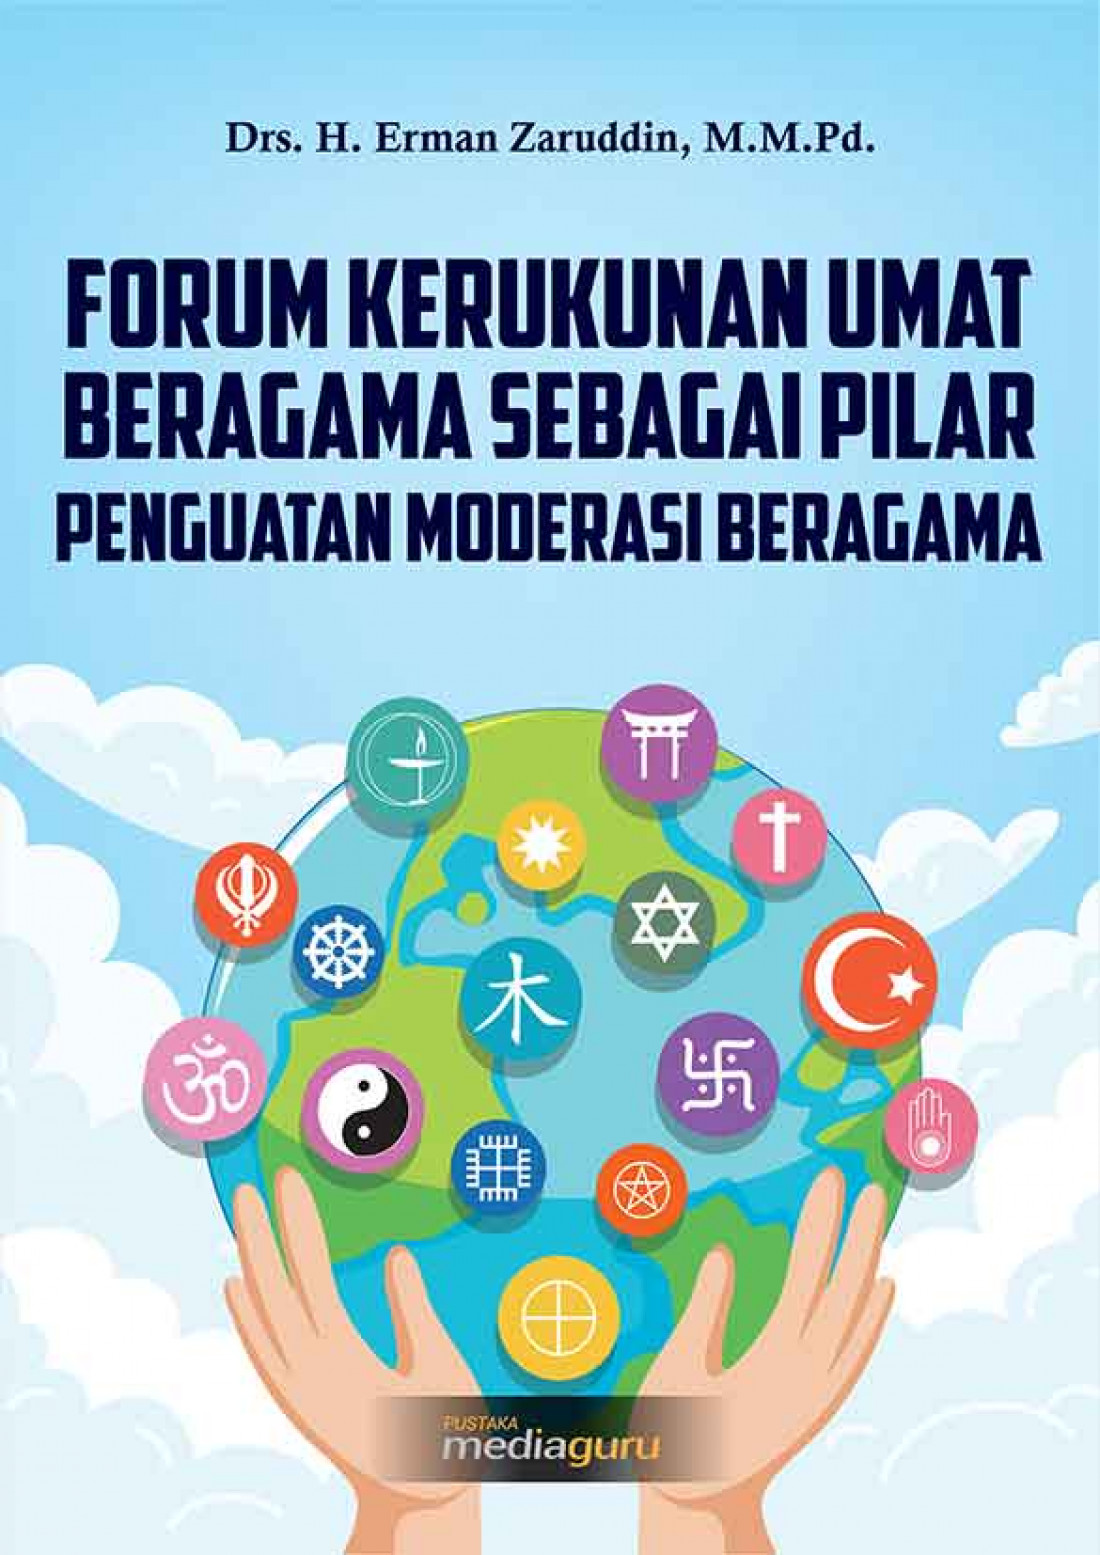 Forum Kerukunan Umat Beragama sebagai Pilar Penguatan Moderasi Beragama